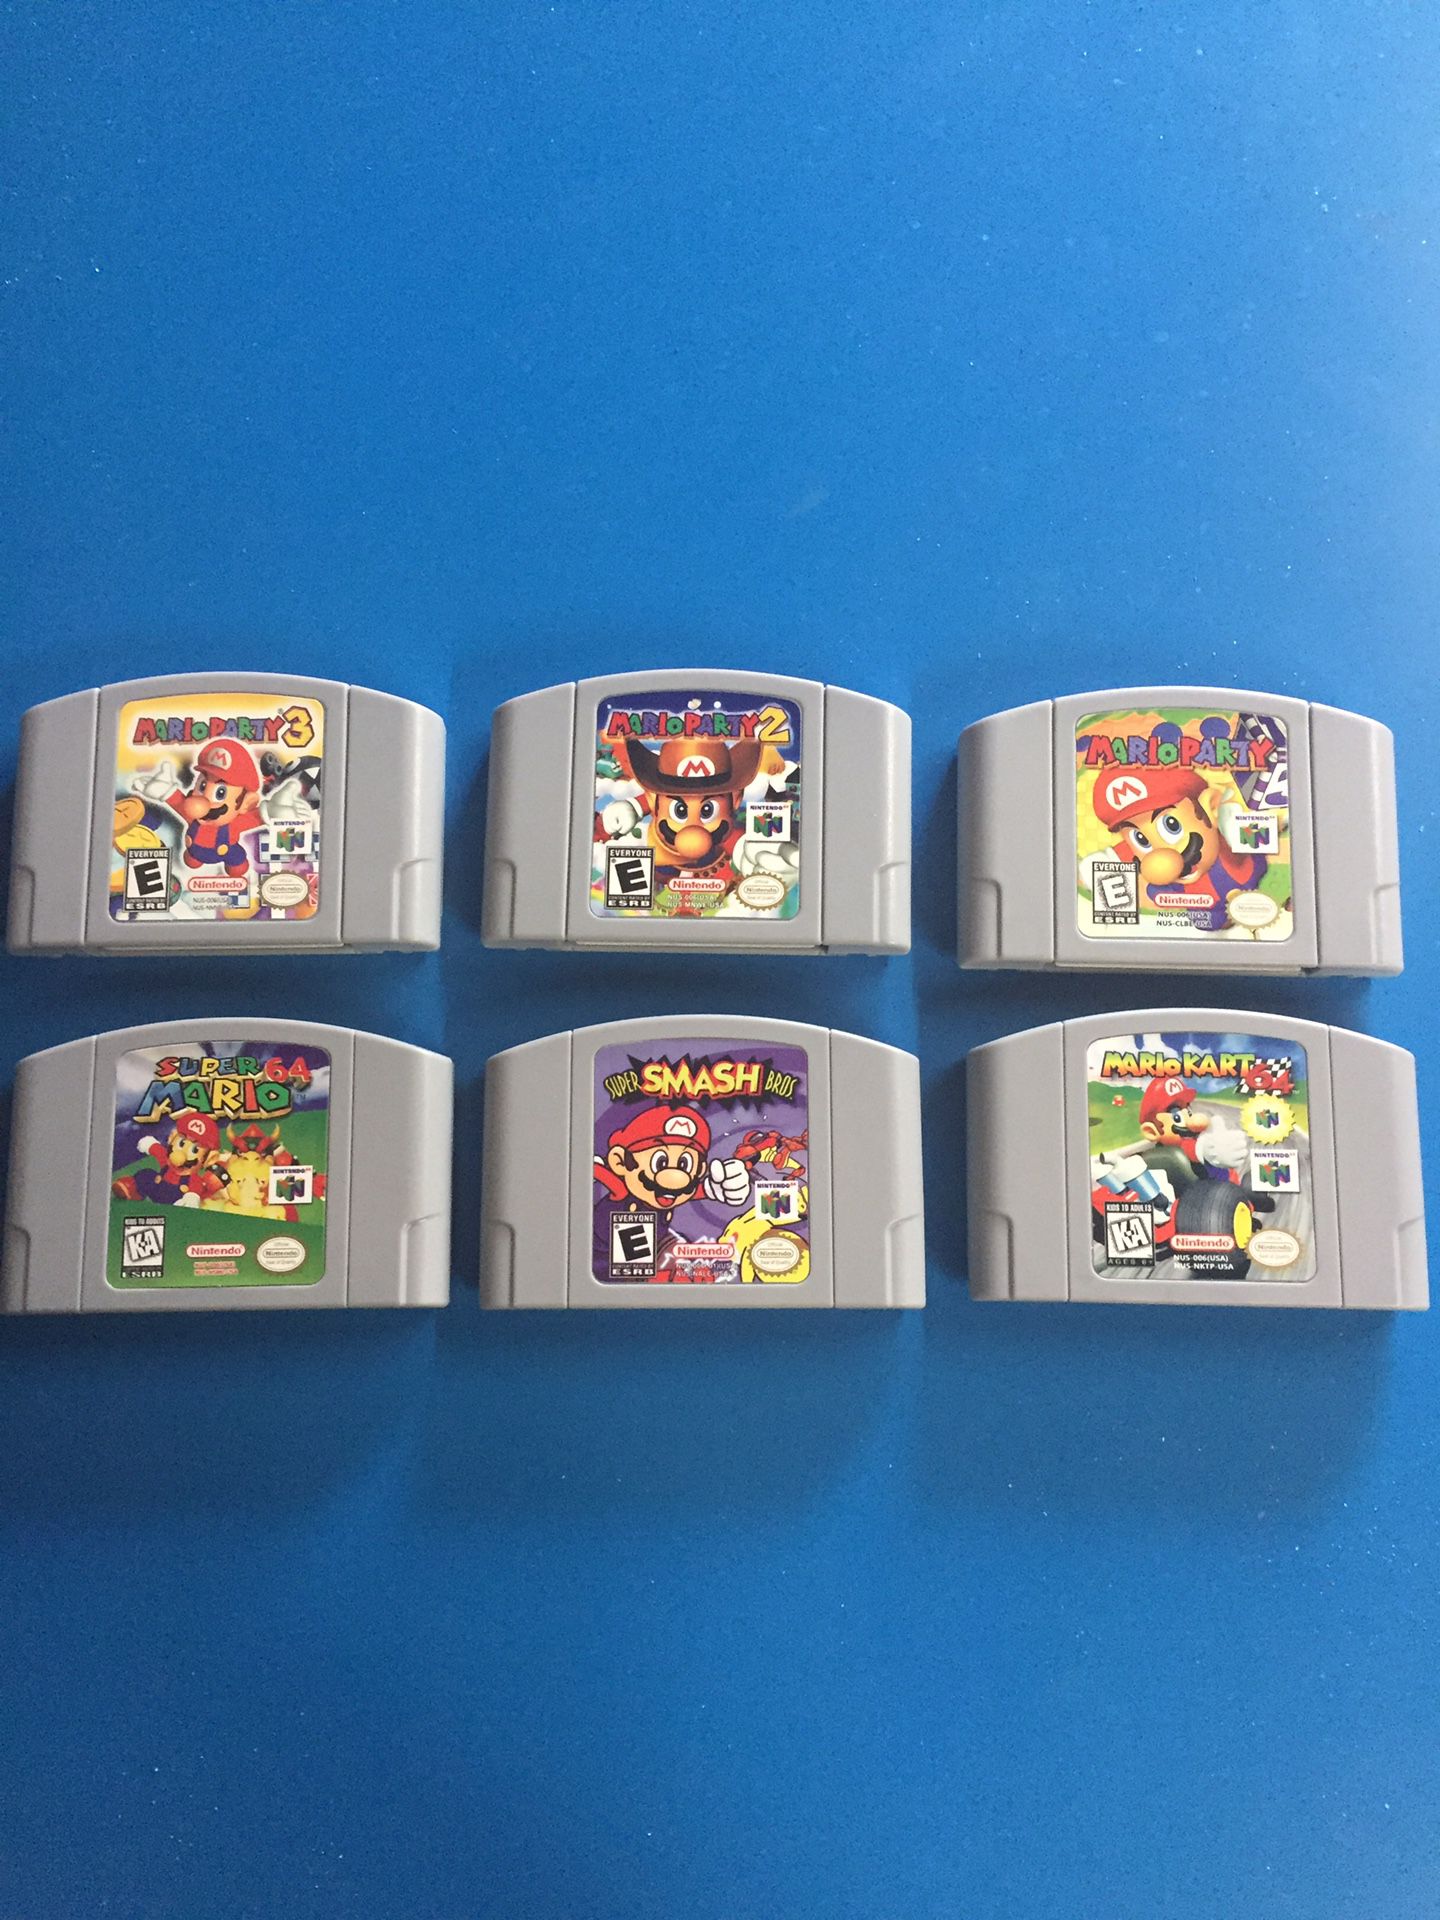 Mario Party 1 2 3 Smash Bros Mario Kart Super Mario n64 Nintendo games bundle